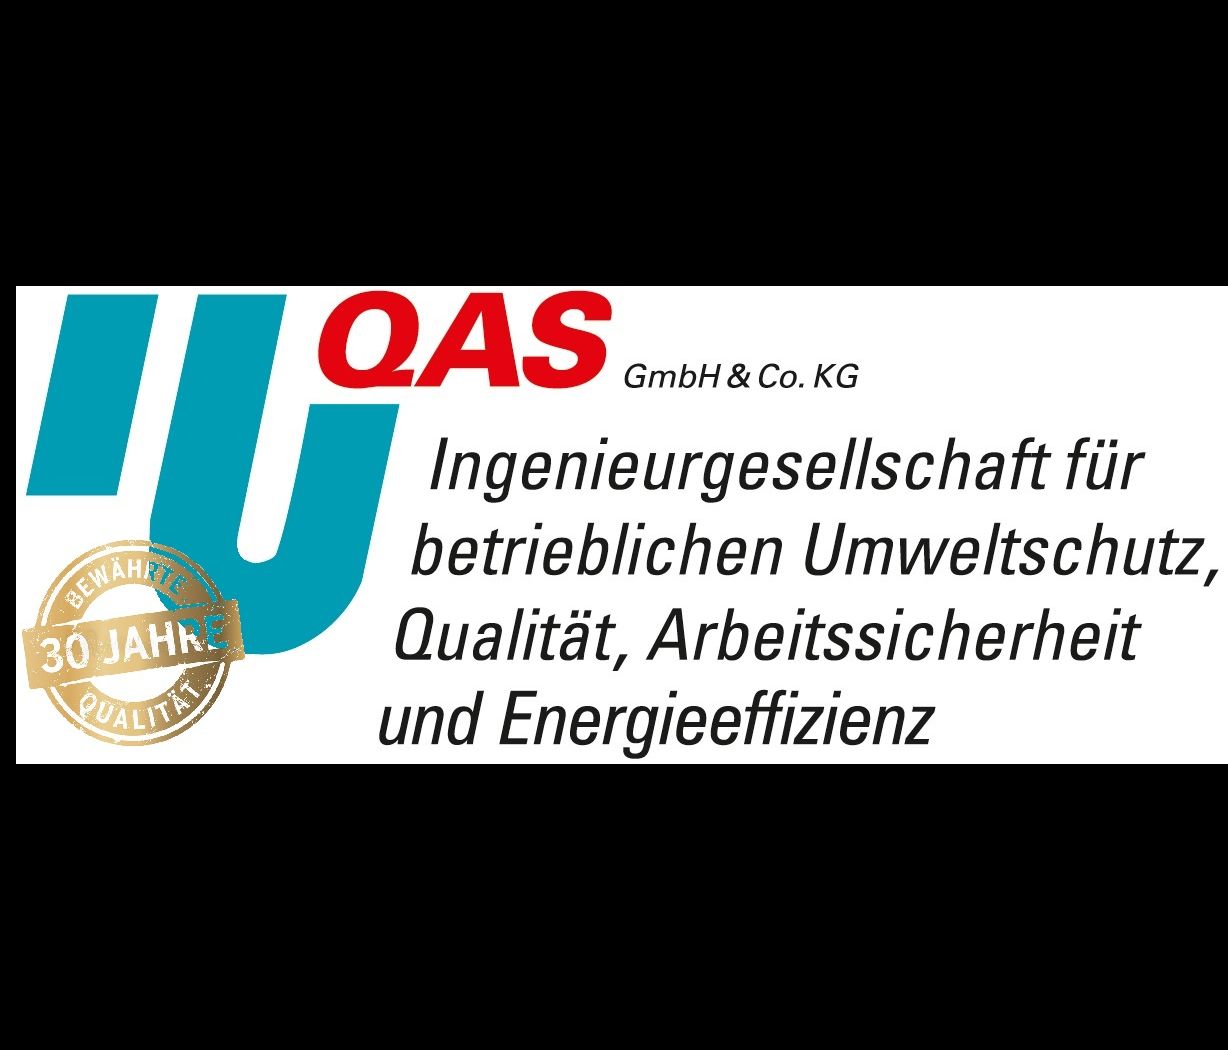 IbUQAS GmbH & Co. KG